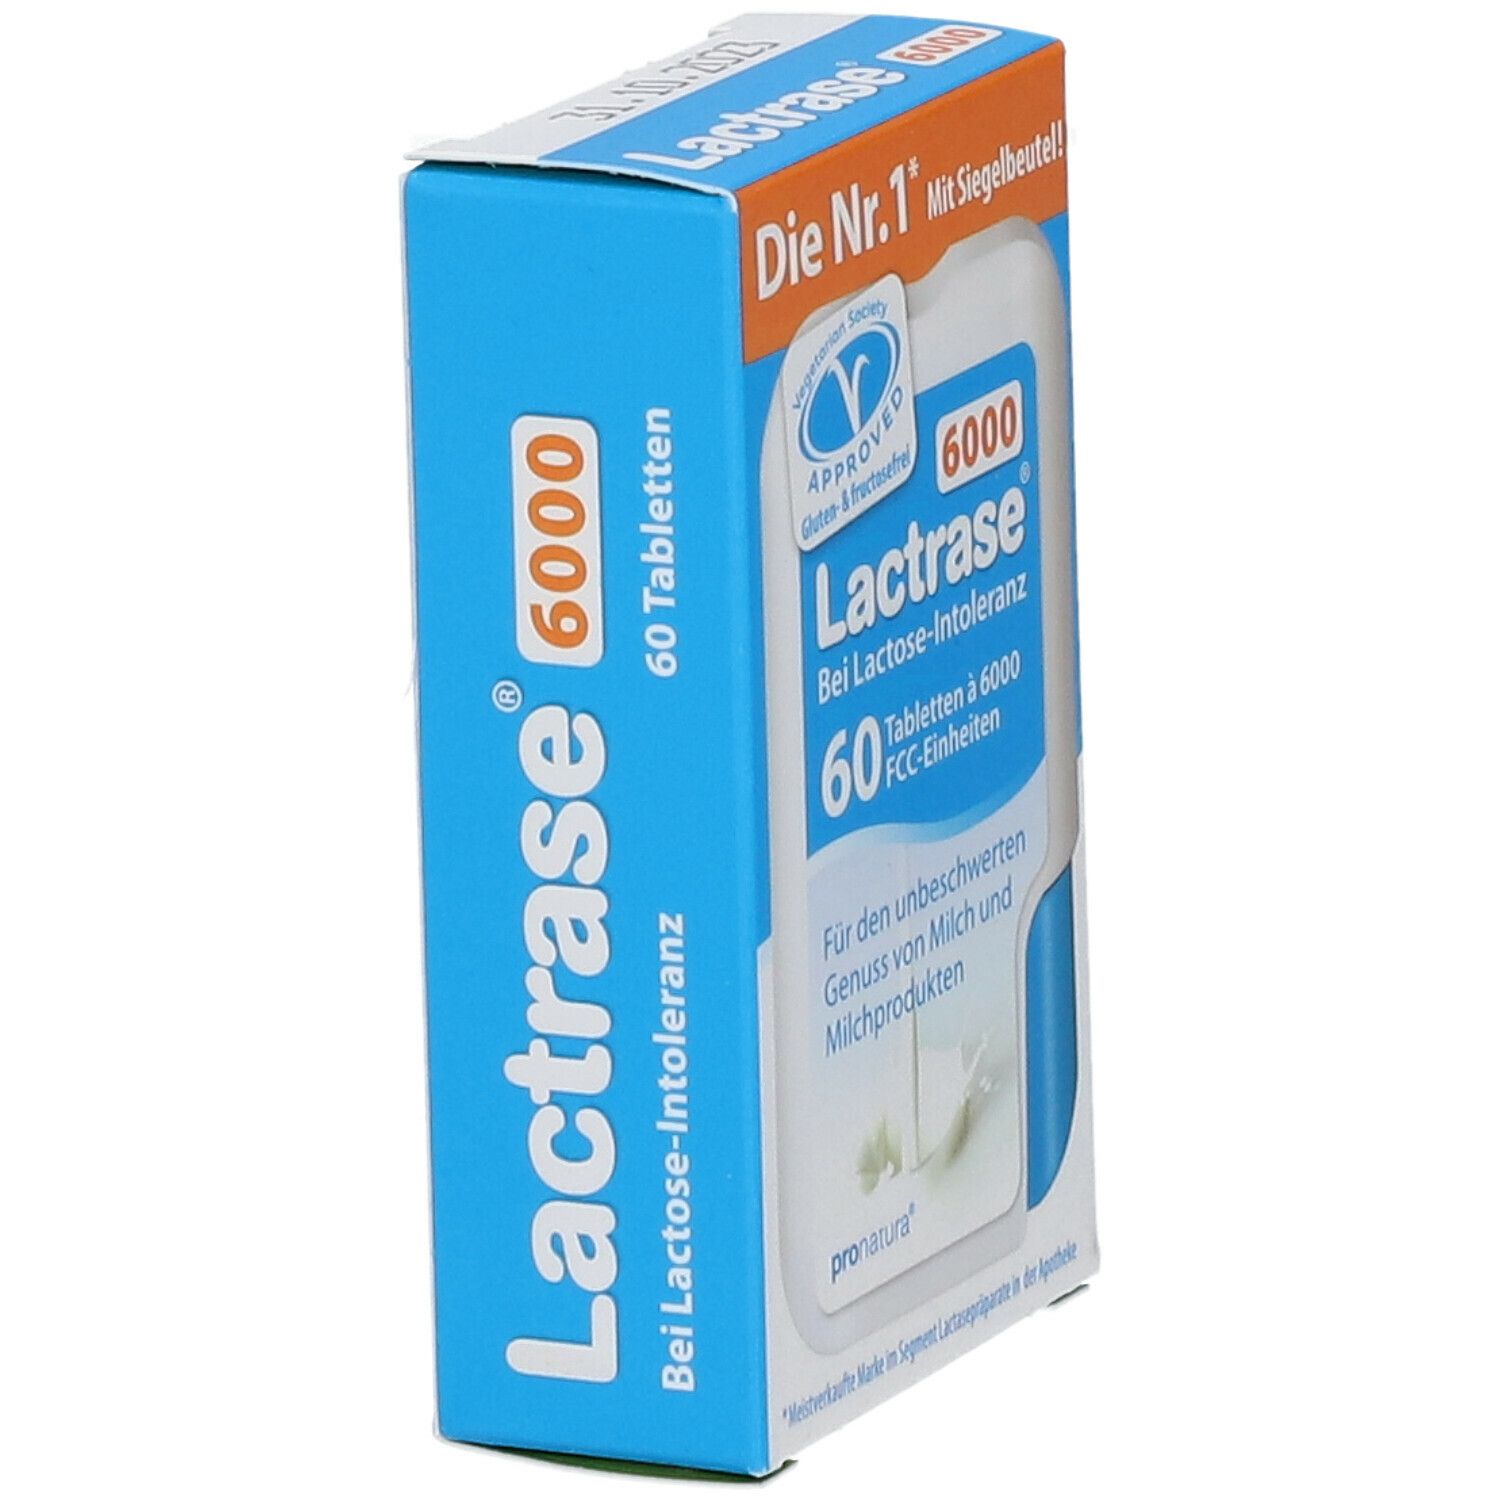 Lactrase® 6000 FCC  Klickspender